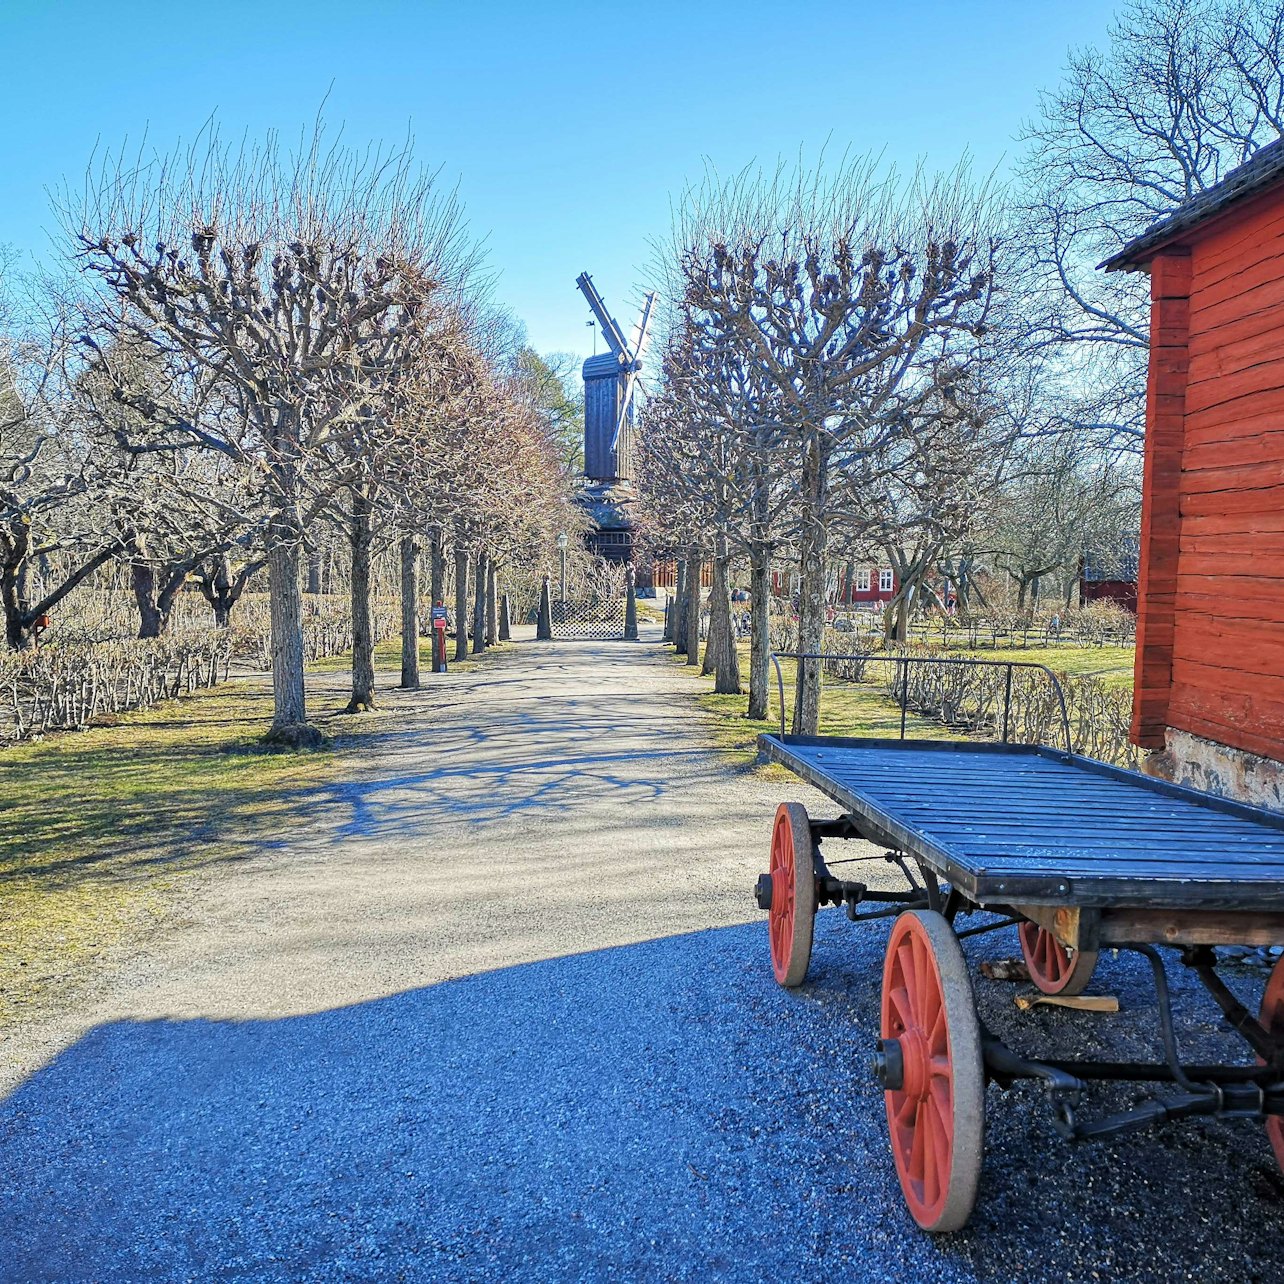 Skansen: Museo al aire libre y zoológico nórdico - Alojamientos en Estocolmo